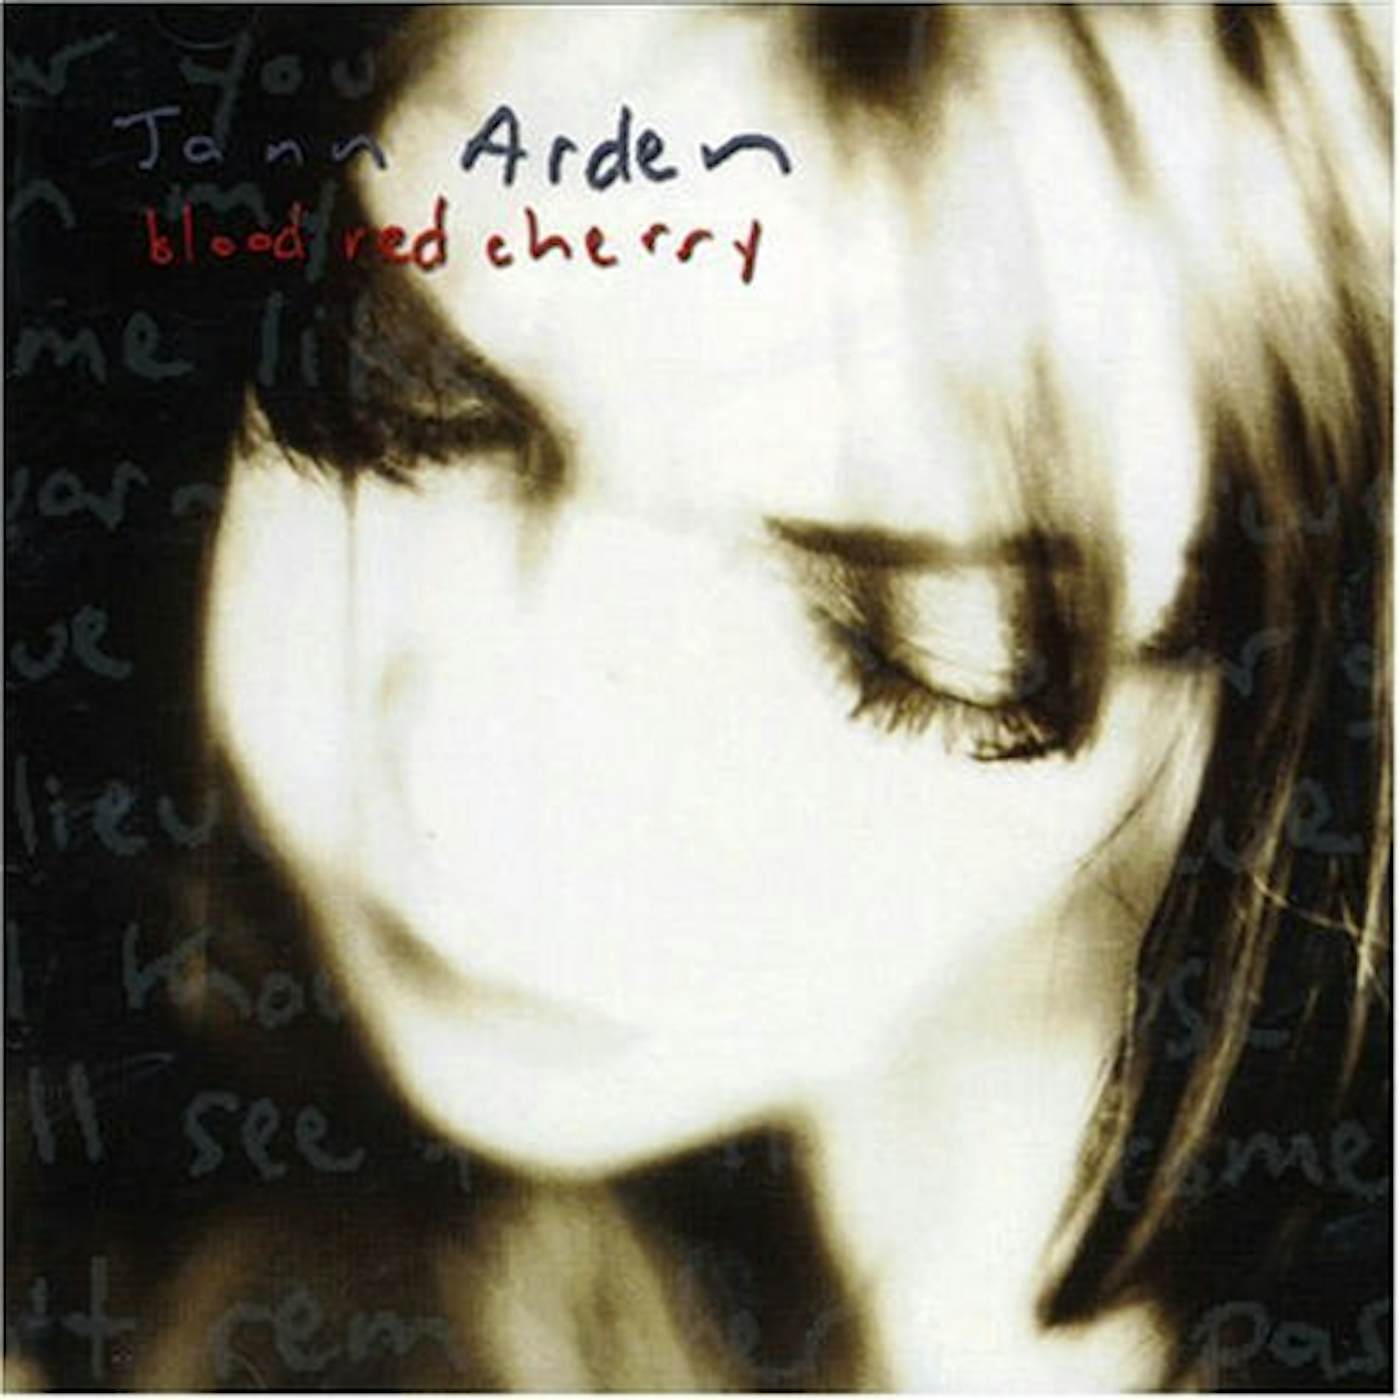 Jann Arden BLOOD RED CHERRY CD